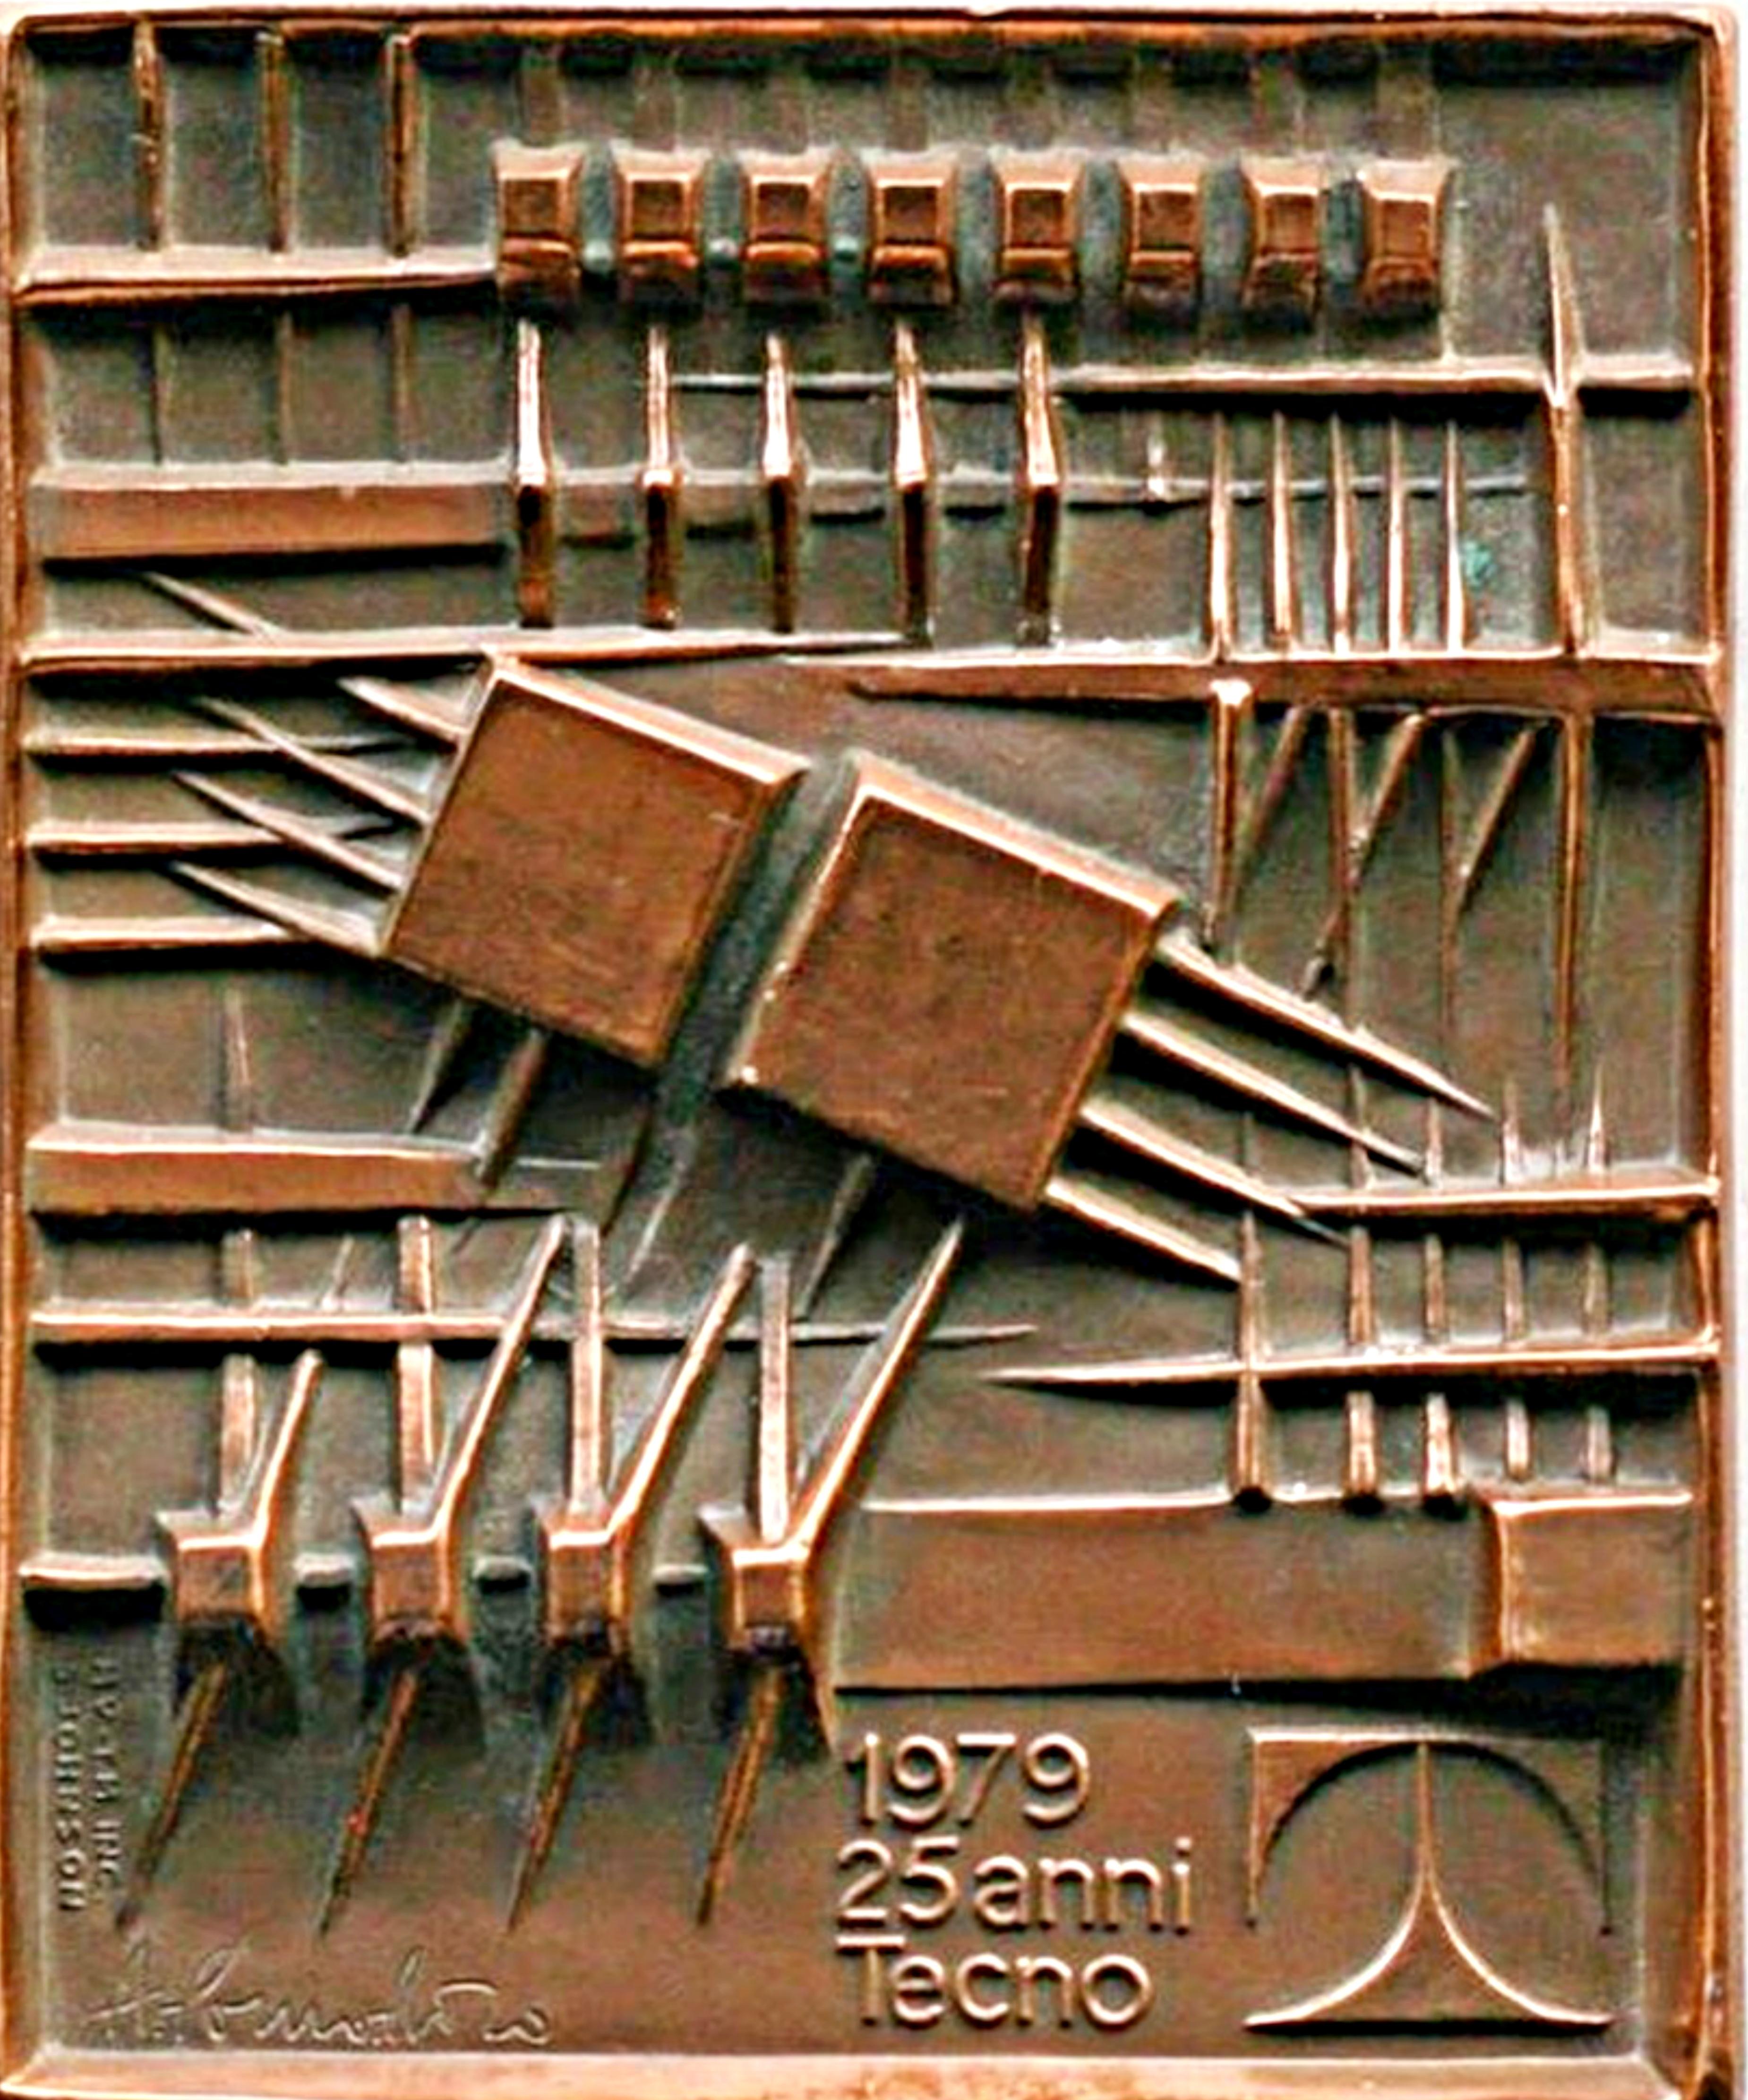 Medaglia 25 Anni Tecno Limited Edition bronze medallion plaque famous sculptor